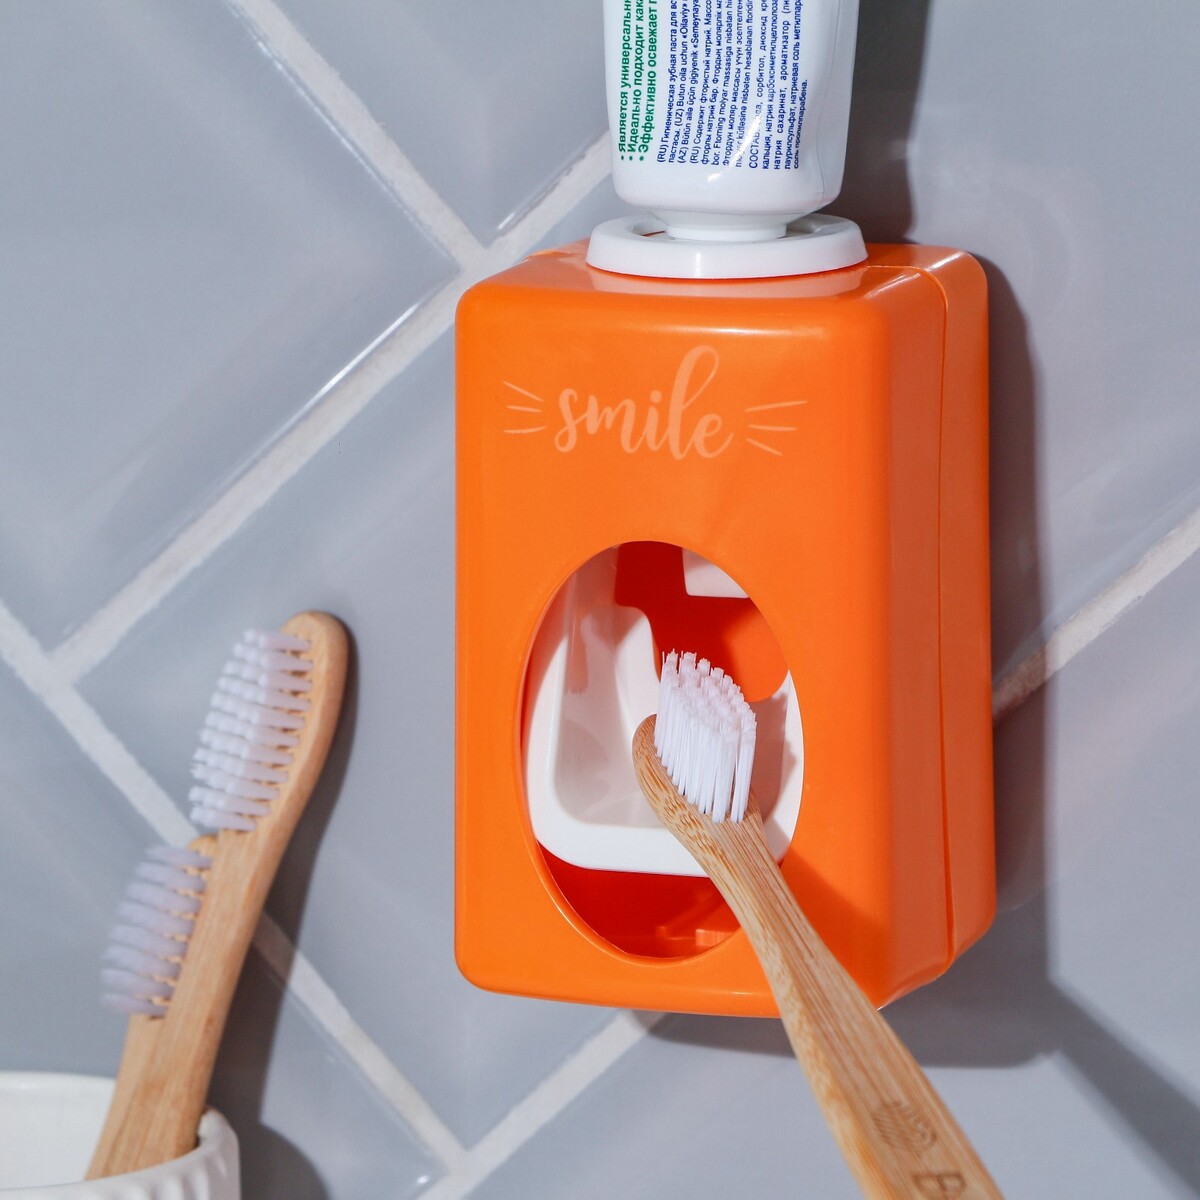 Файл STL устройство для выдавливания зубной пасты 🧞‍♂️・Модель 3D-принтера для скачивания・Cults